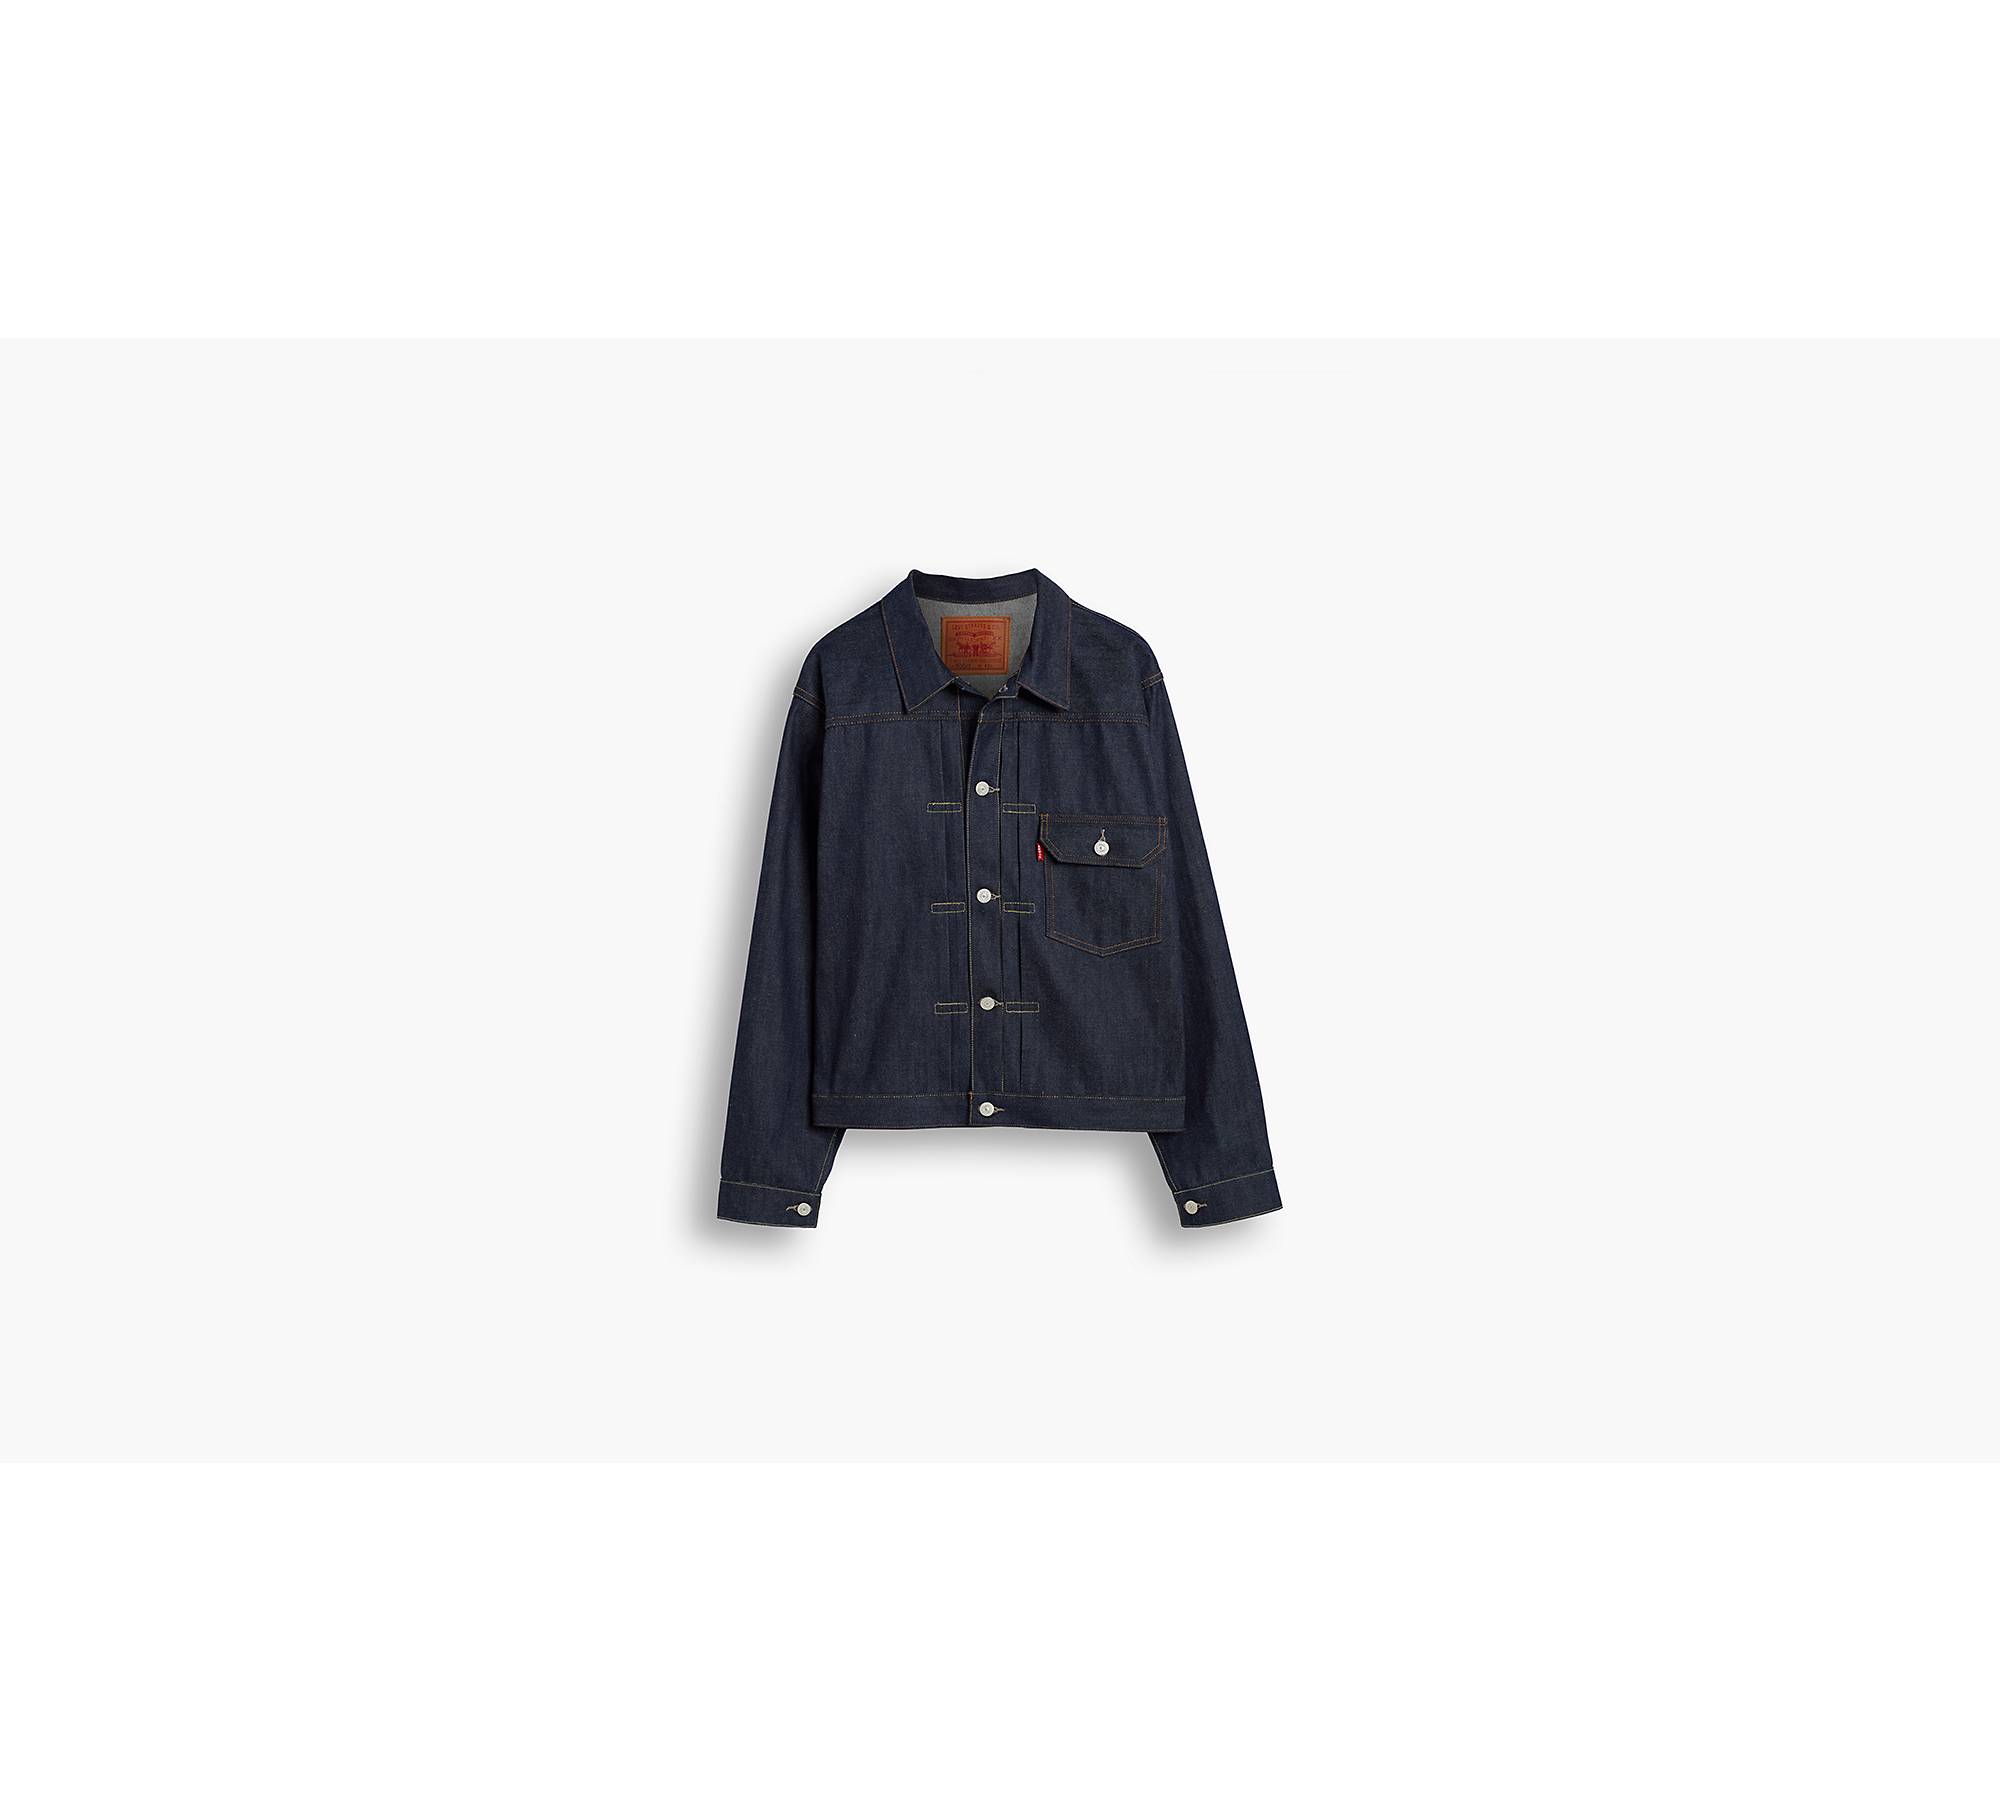 Levi's® Vintage Clothing 1936 Type I Jacket - Blue | Levi's® GB